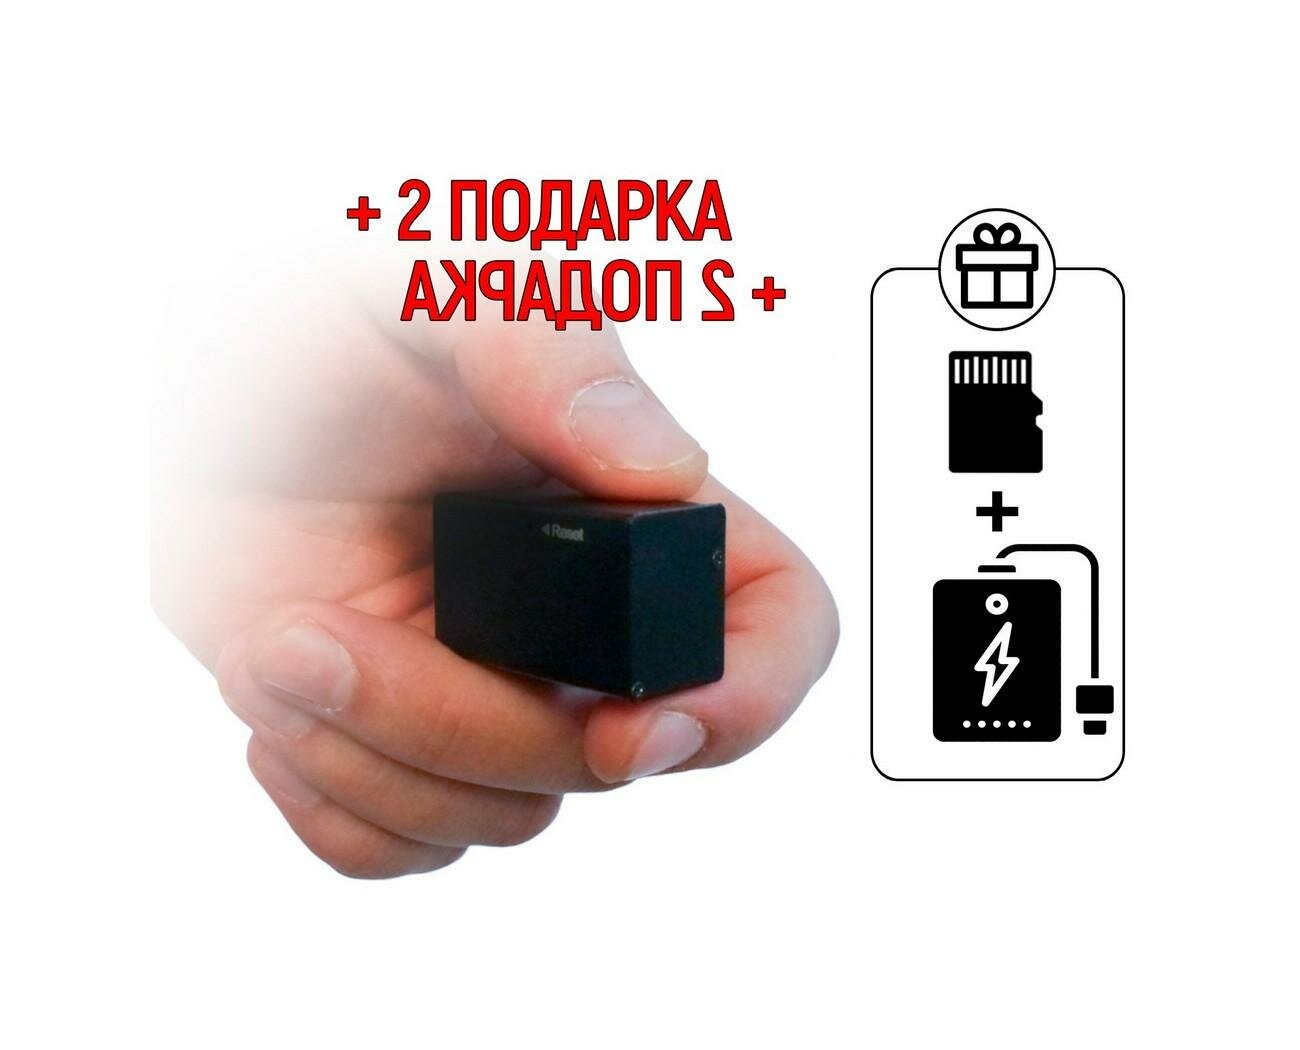 333Самый маленький диктофон Edic-mini CARD-16 мод: A99 (W4490RU) + 2 подарка (Повербанк 10000 mAh + SD карта) - диктофон для записи хороший